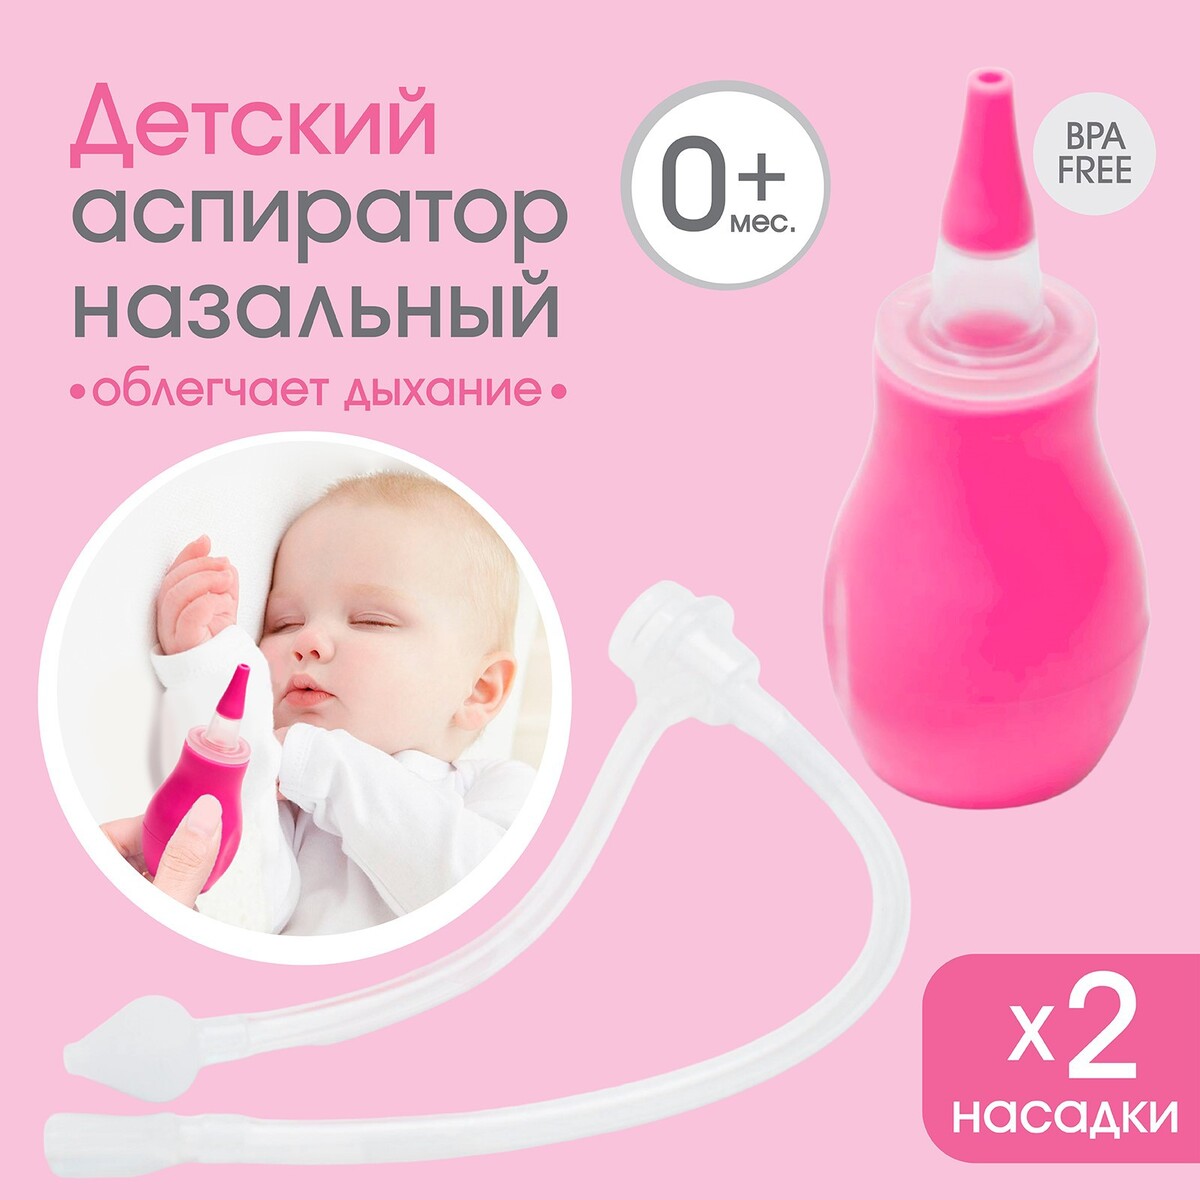 Детский назальный аспиратор с 2-мя сменными насадками, в контейнере, цвет розовый аспиратор baby vac назальный детский